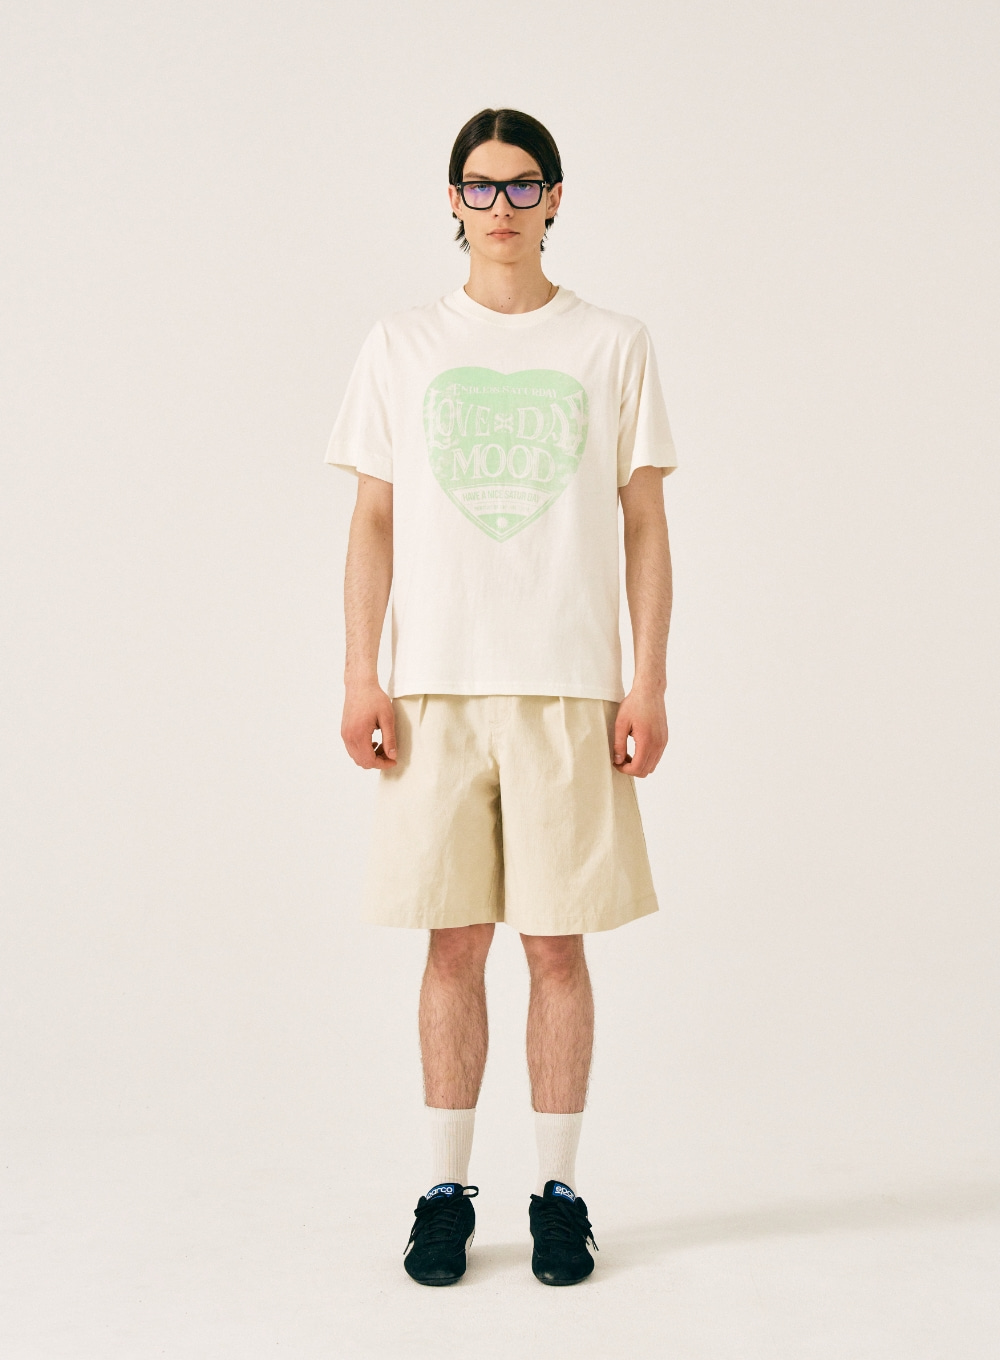 [5,000원 쿠폰] Saturday Retro Mood Graphic T-Shirts - Cream Green